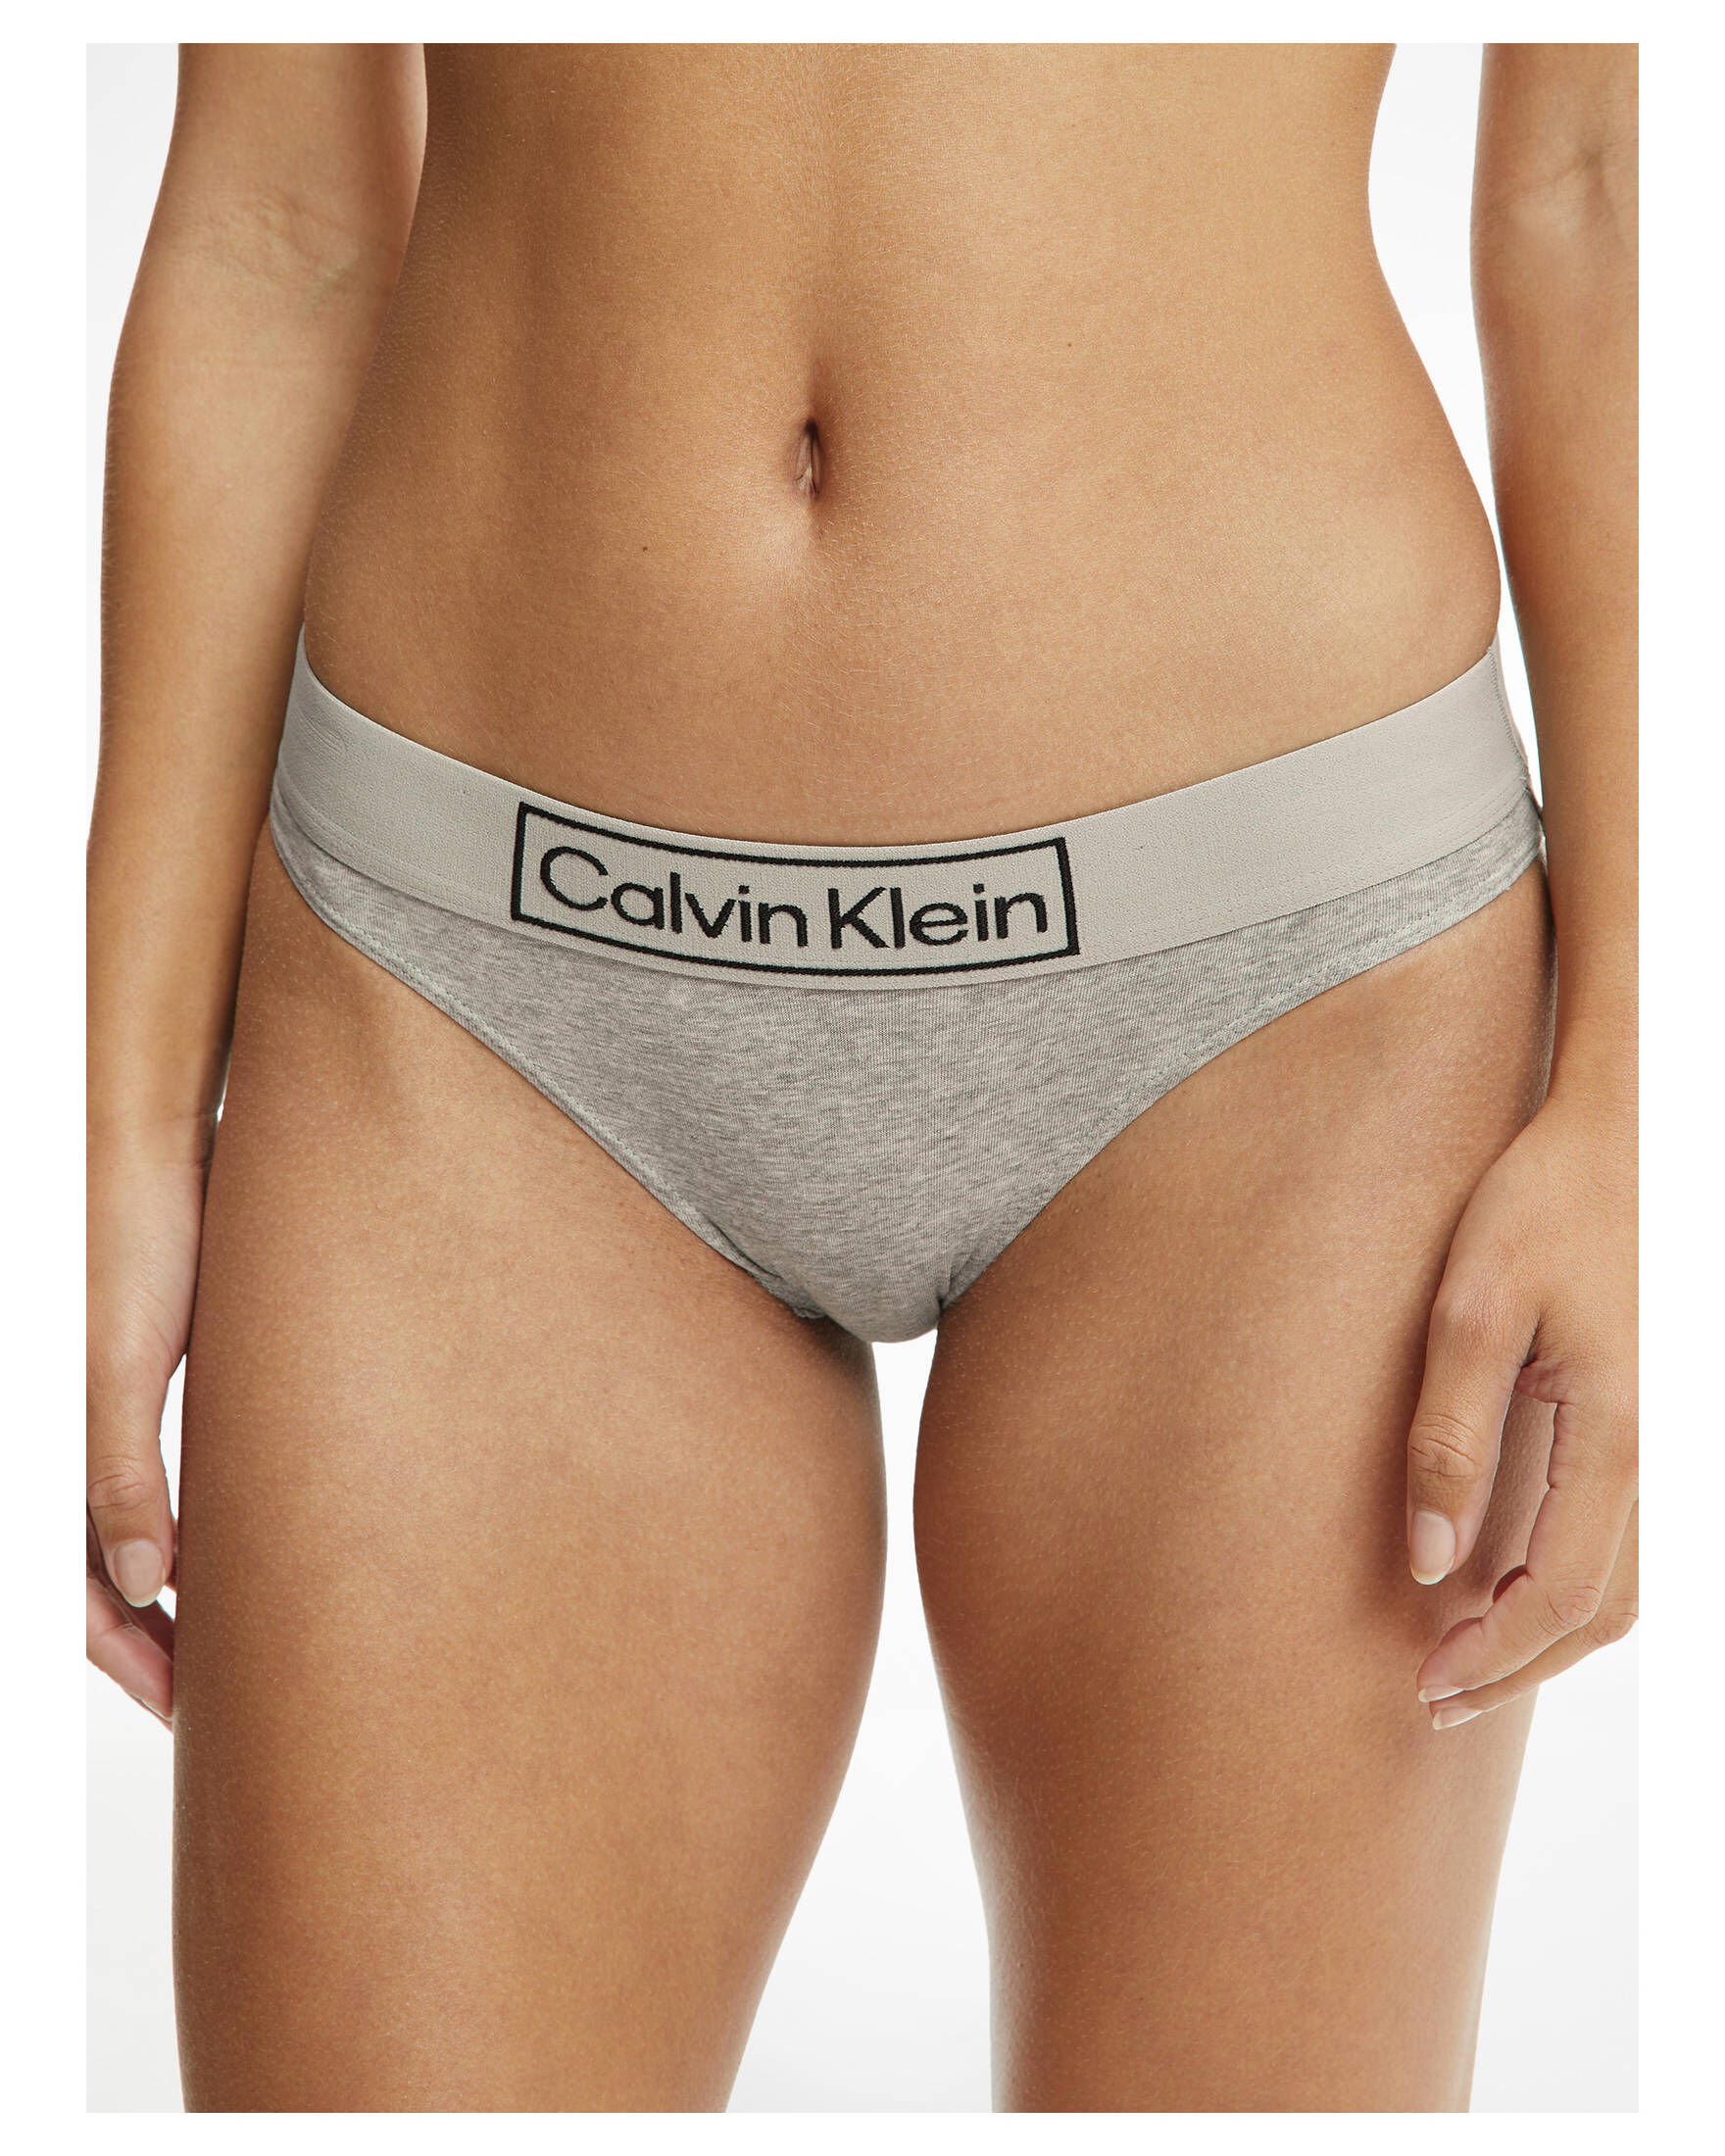 Calvin Klein Wäsche für Damen kaufen » Calvin Klein Unterwäsche